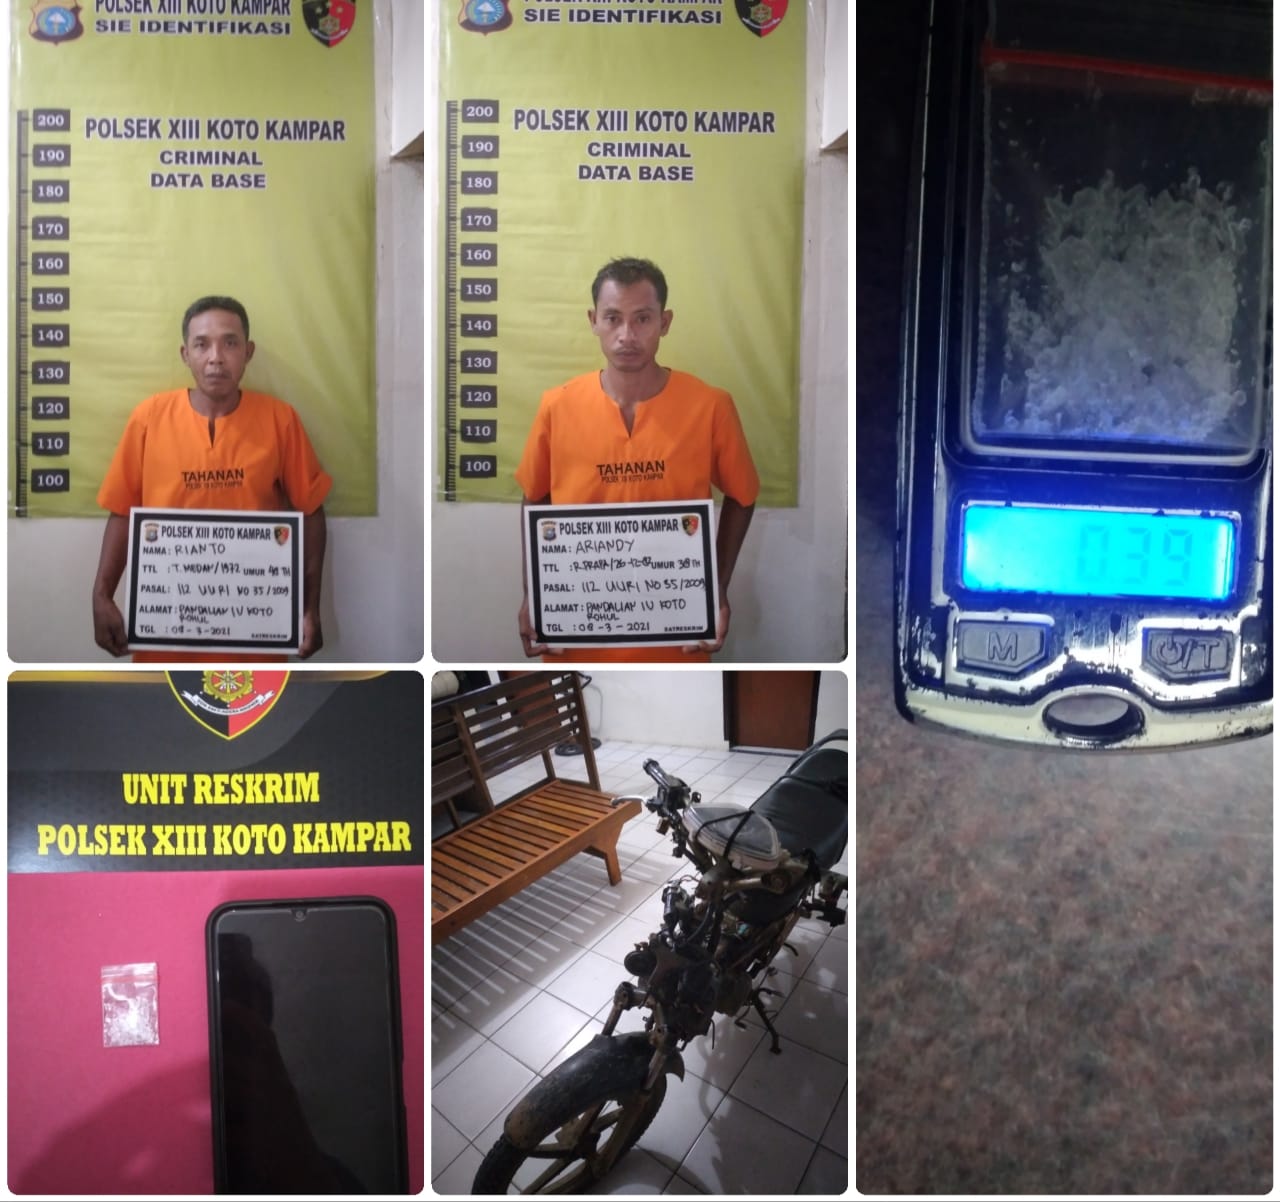 Tim Candi Crime Hunter Polsek XIII Koto Kampar Ungkap 2 Kasus Narkoba Dalam Sehari